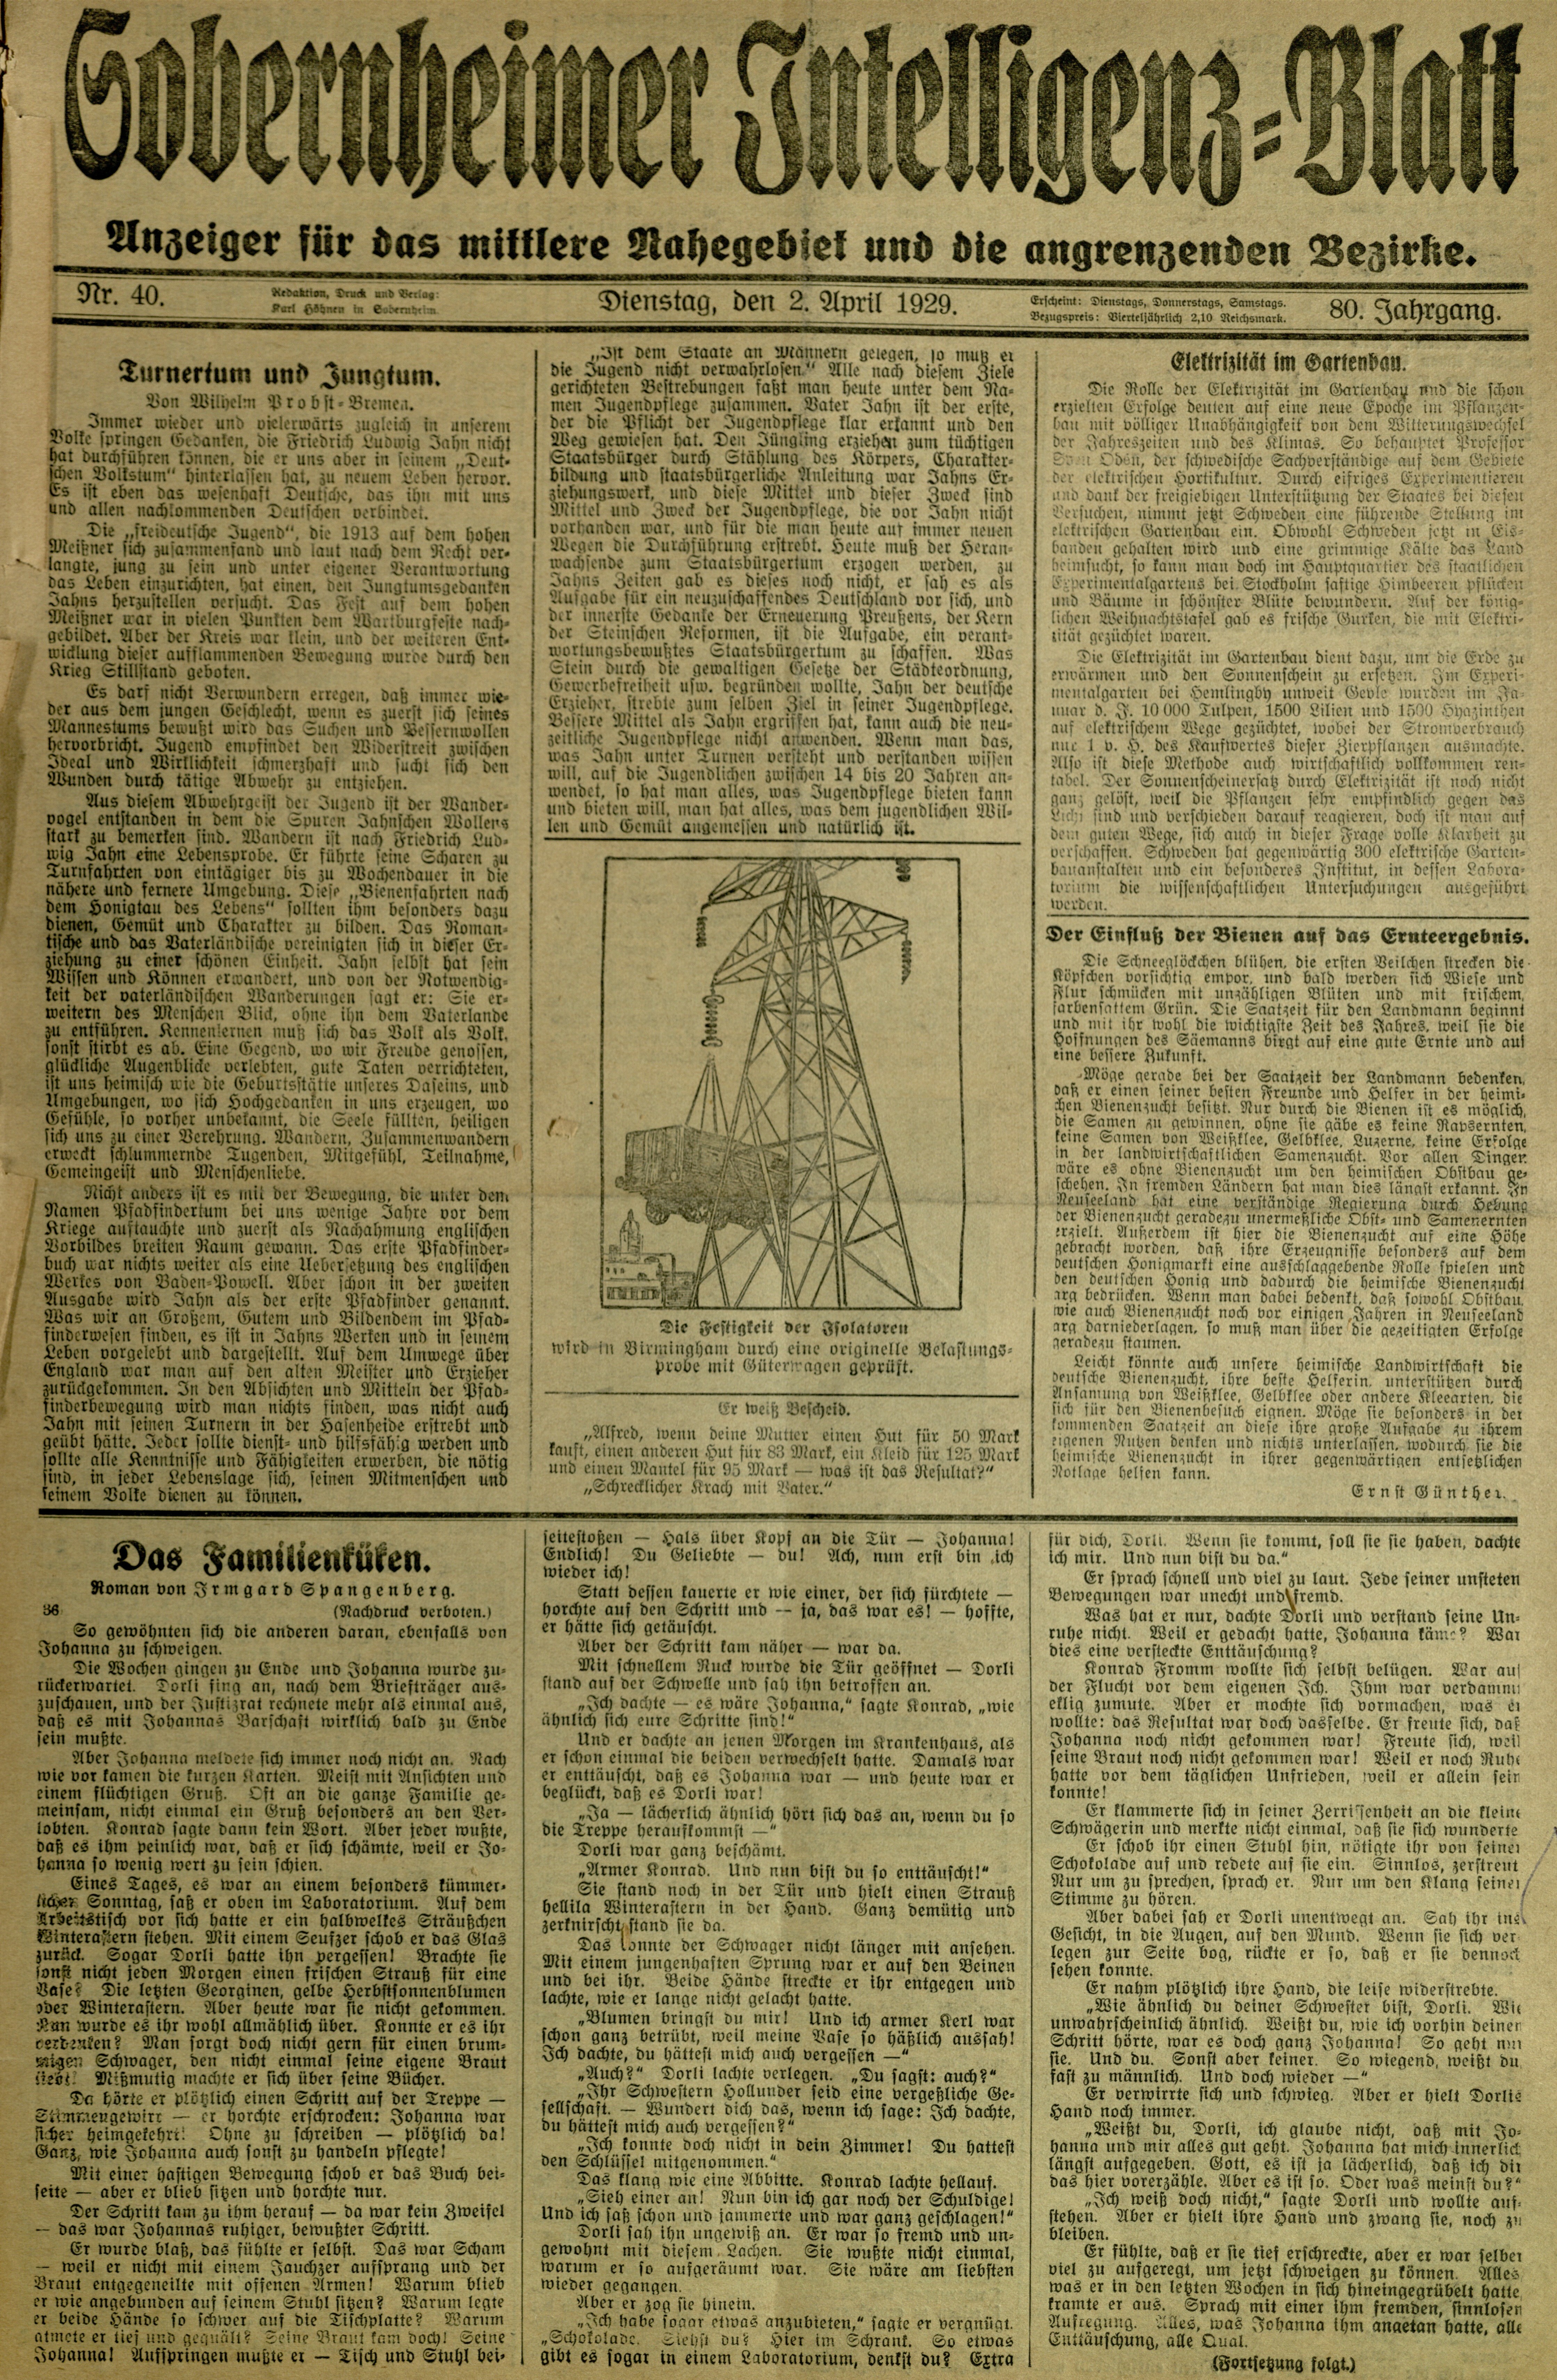 Zeitung: Sobernheimer Intelligenzblatt; September 1929, Jg. 80 Nr. 40 (Heimatmuseum Bad Sobernheim CC BY-NC-SA)